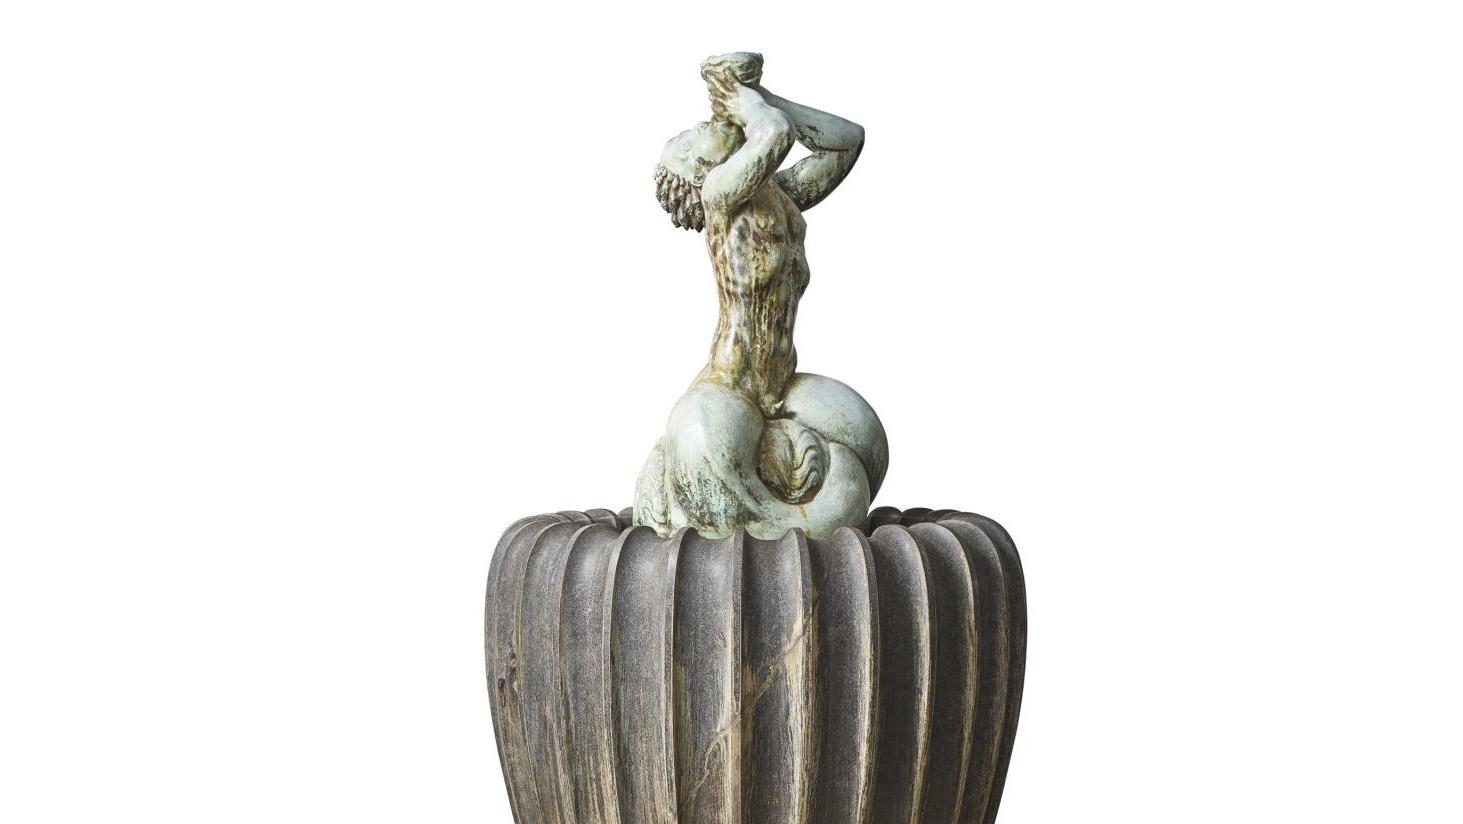 Carl Milles (1875-1955), Small Triton Fountain, 1916, bronze à patine vert-de-gris... Carl Milles, sculpteur mythologique